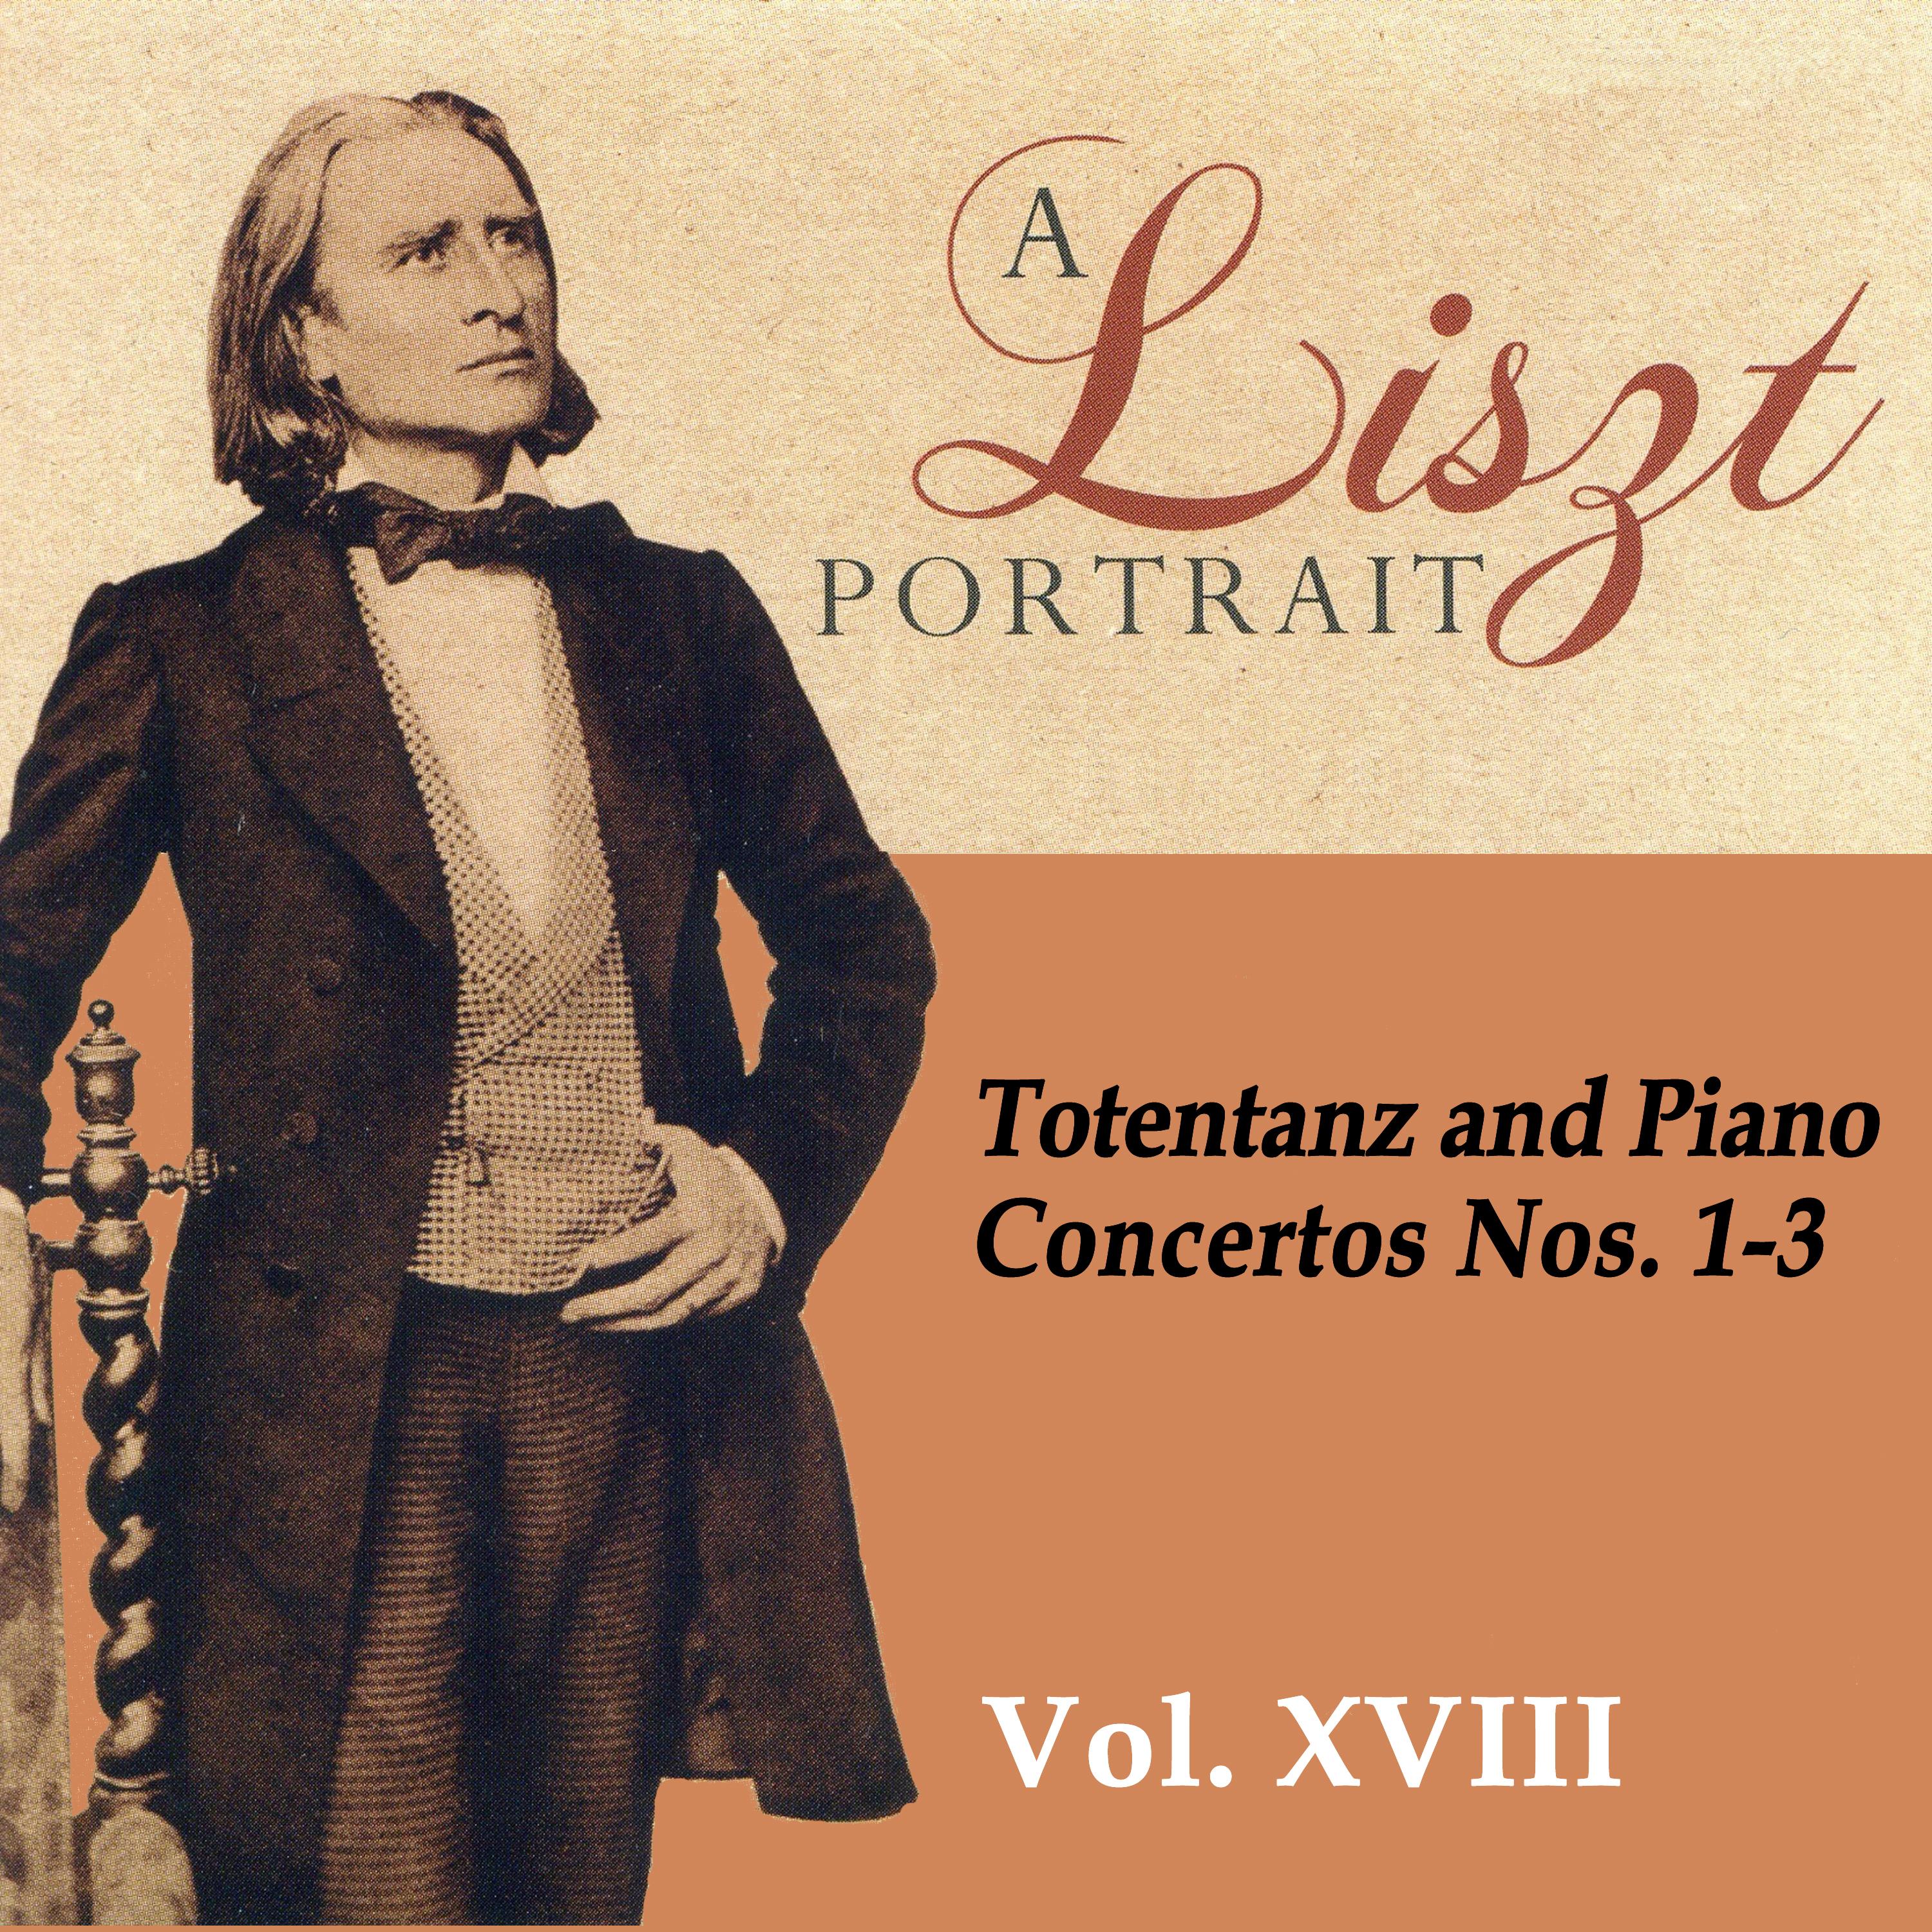 A Liszt Portrait, Vol. XVIII